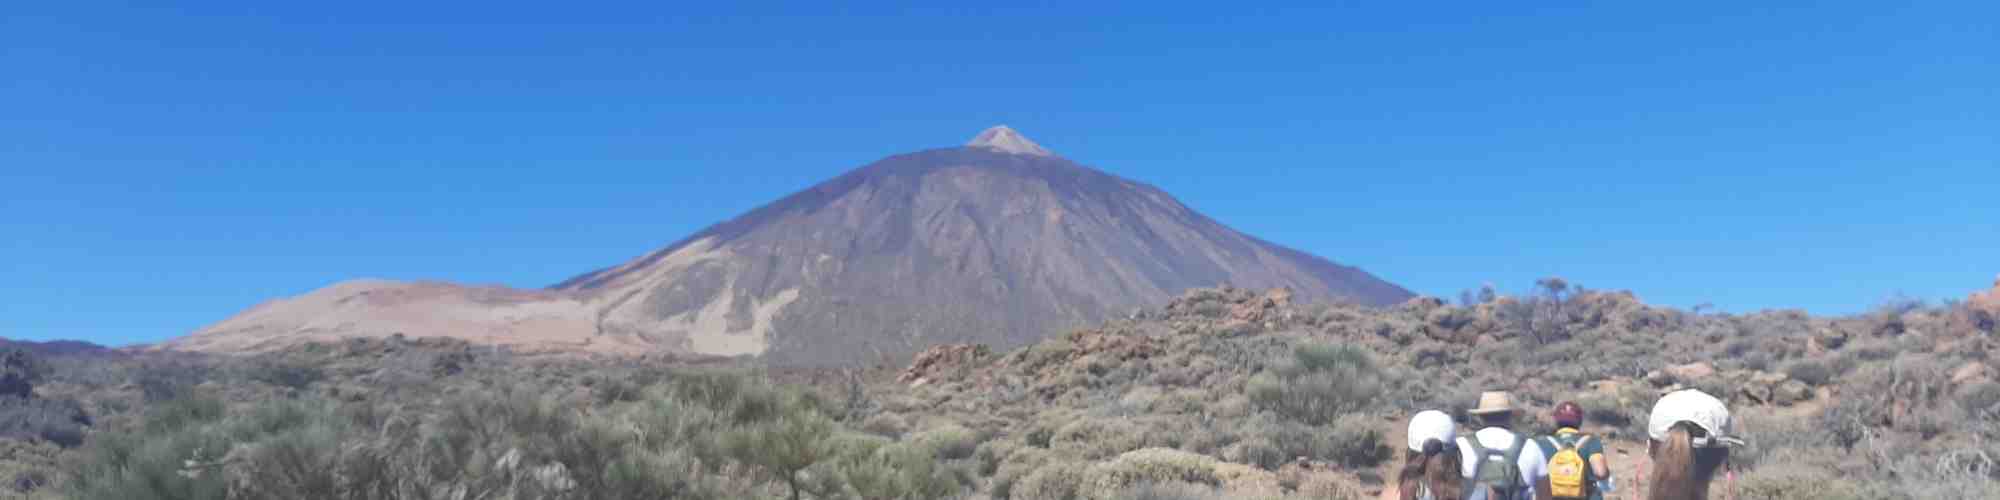 Quelle destination ensoleillée abrité le mont Teide qui est le troisième plus grand volcan du monde ?